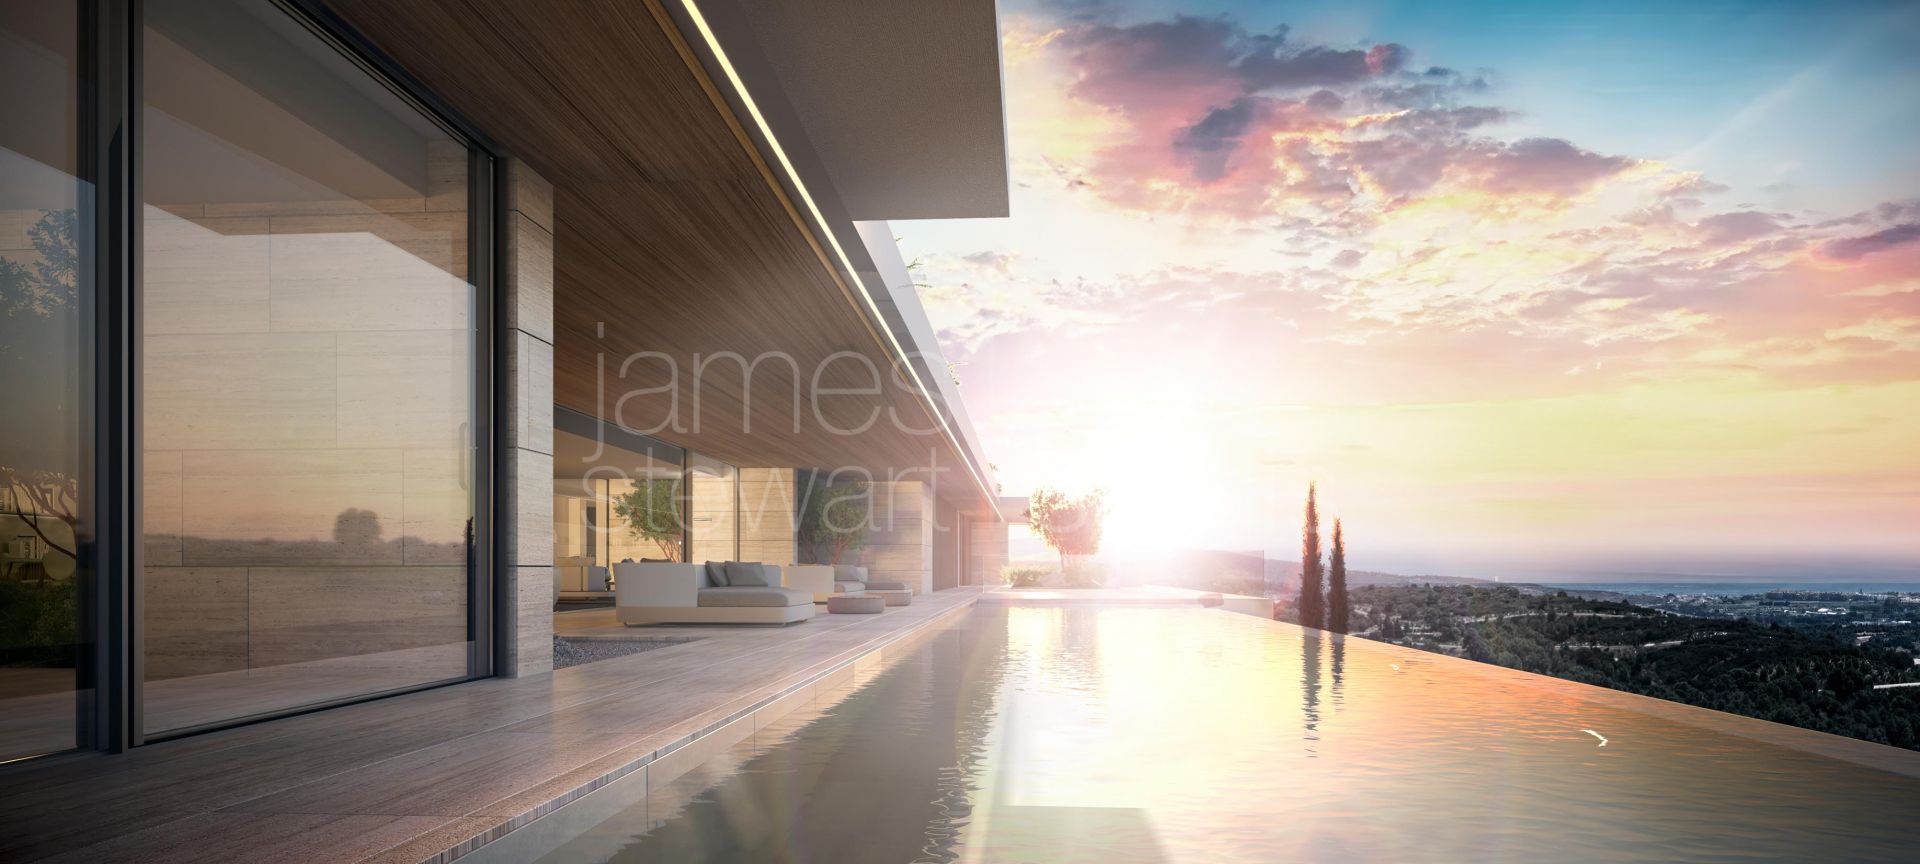 Spectacular contemporary Villa with views in La Reserva de Sotogrande - construction to start soon